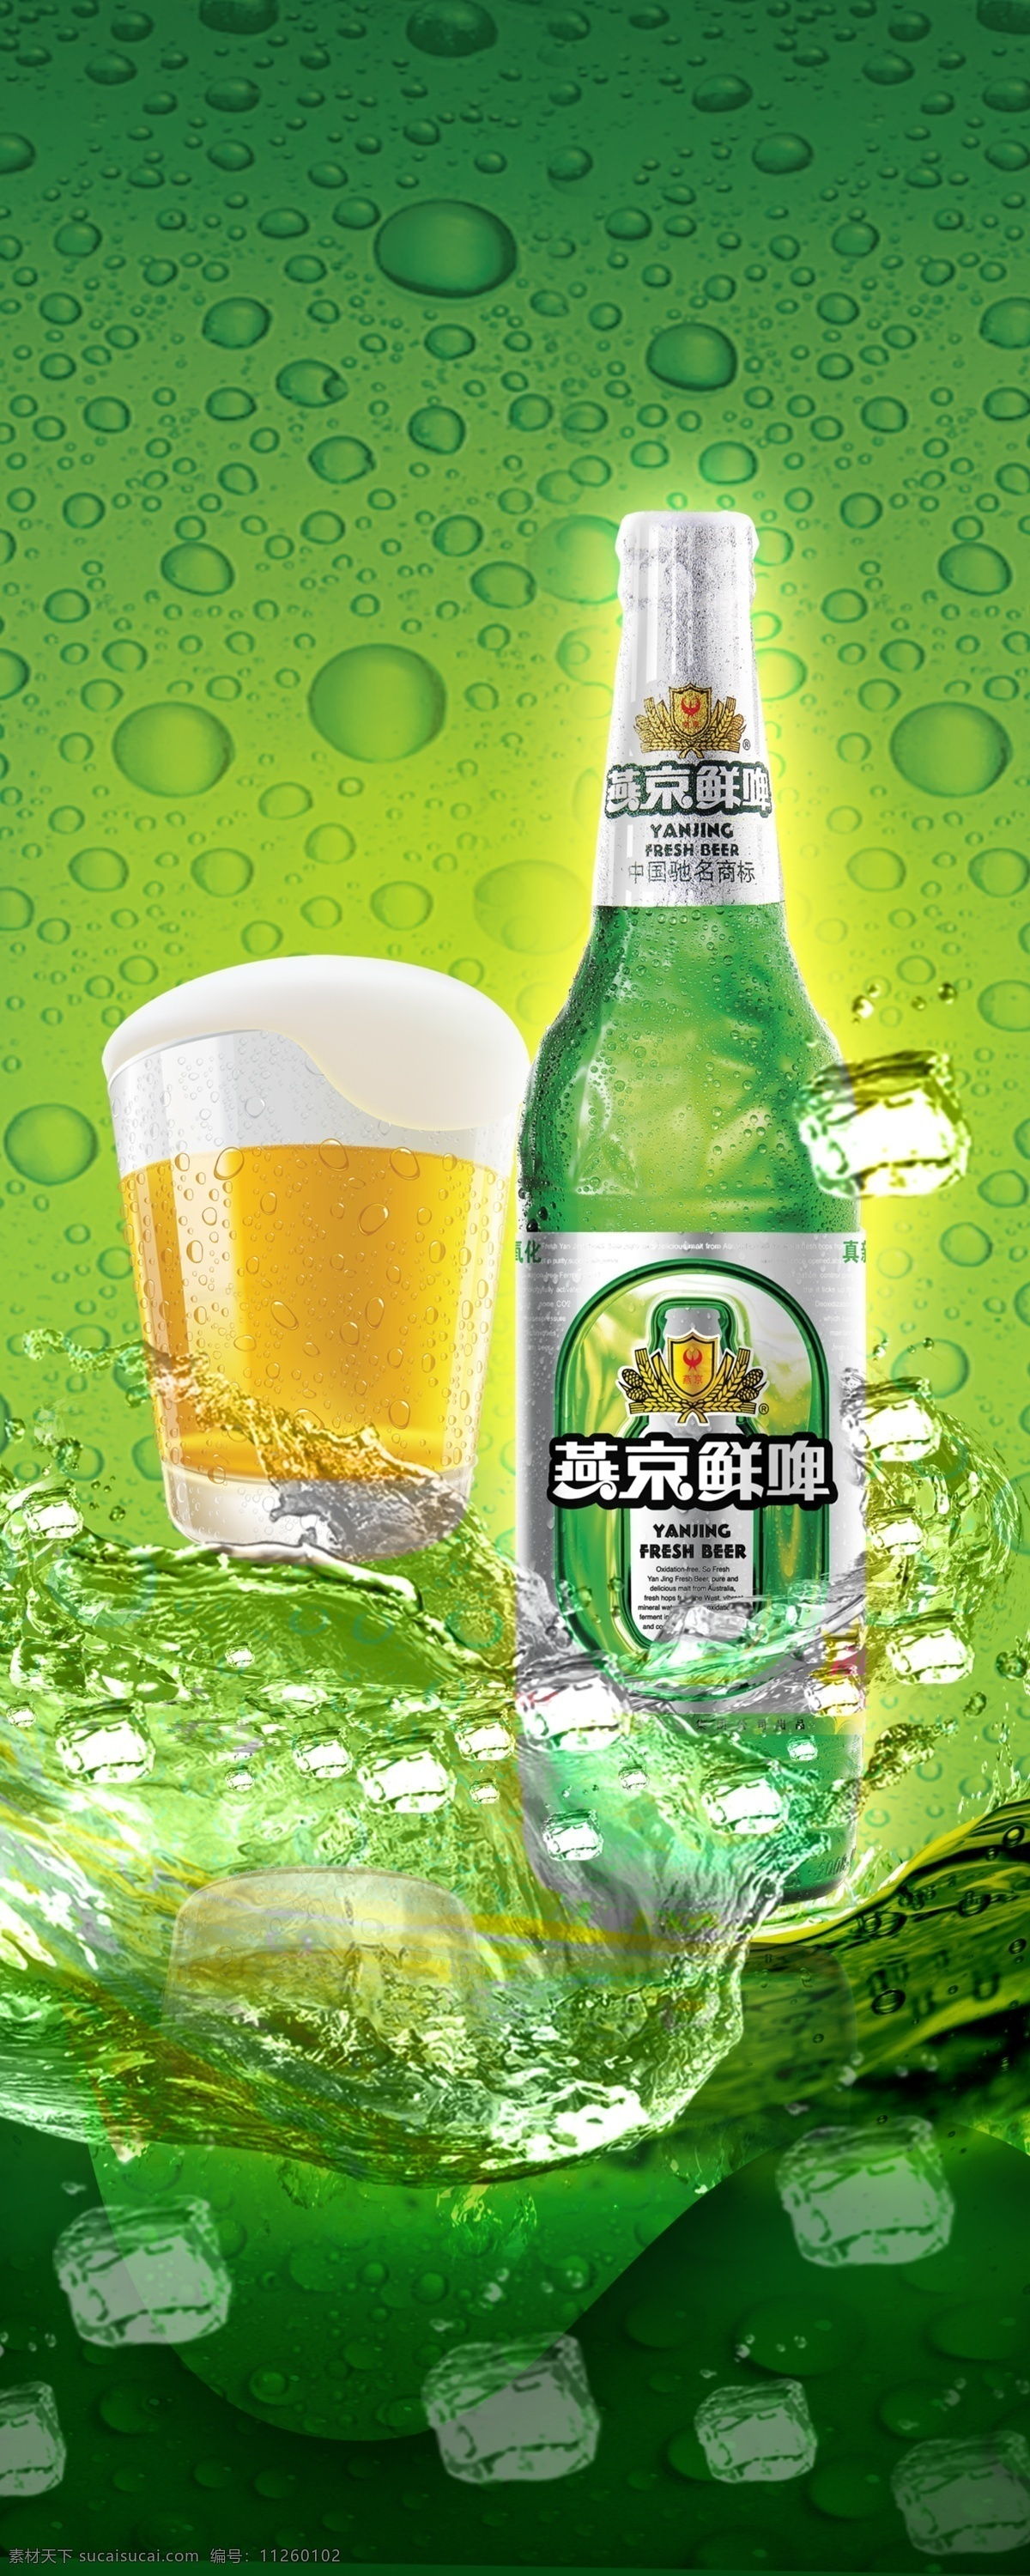 燕京啤酒 模板下载 燕京 啤酒 广告设计模板 源文件